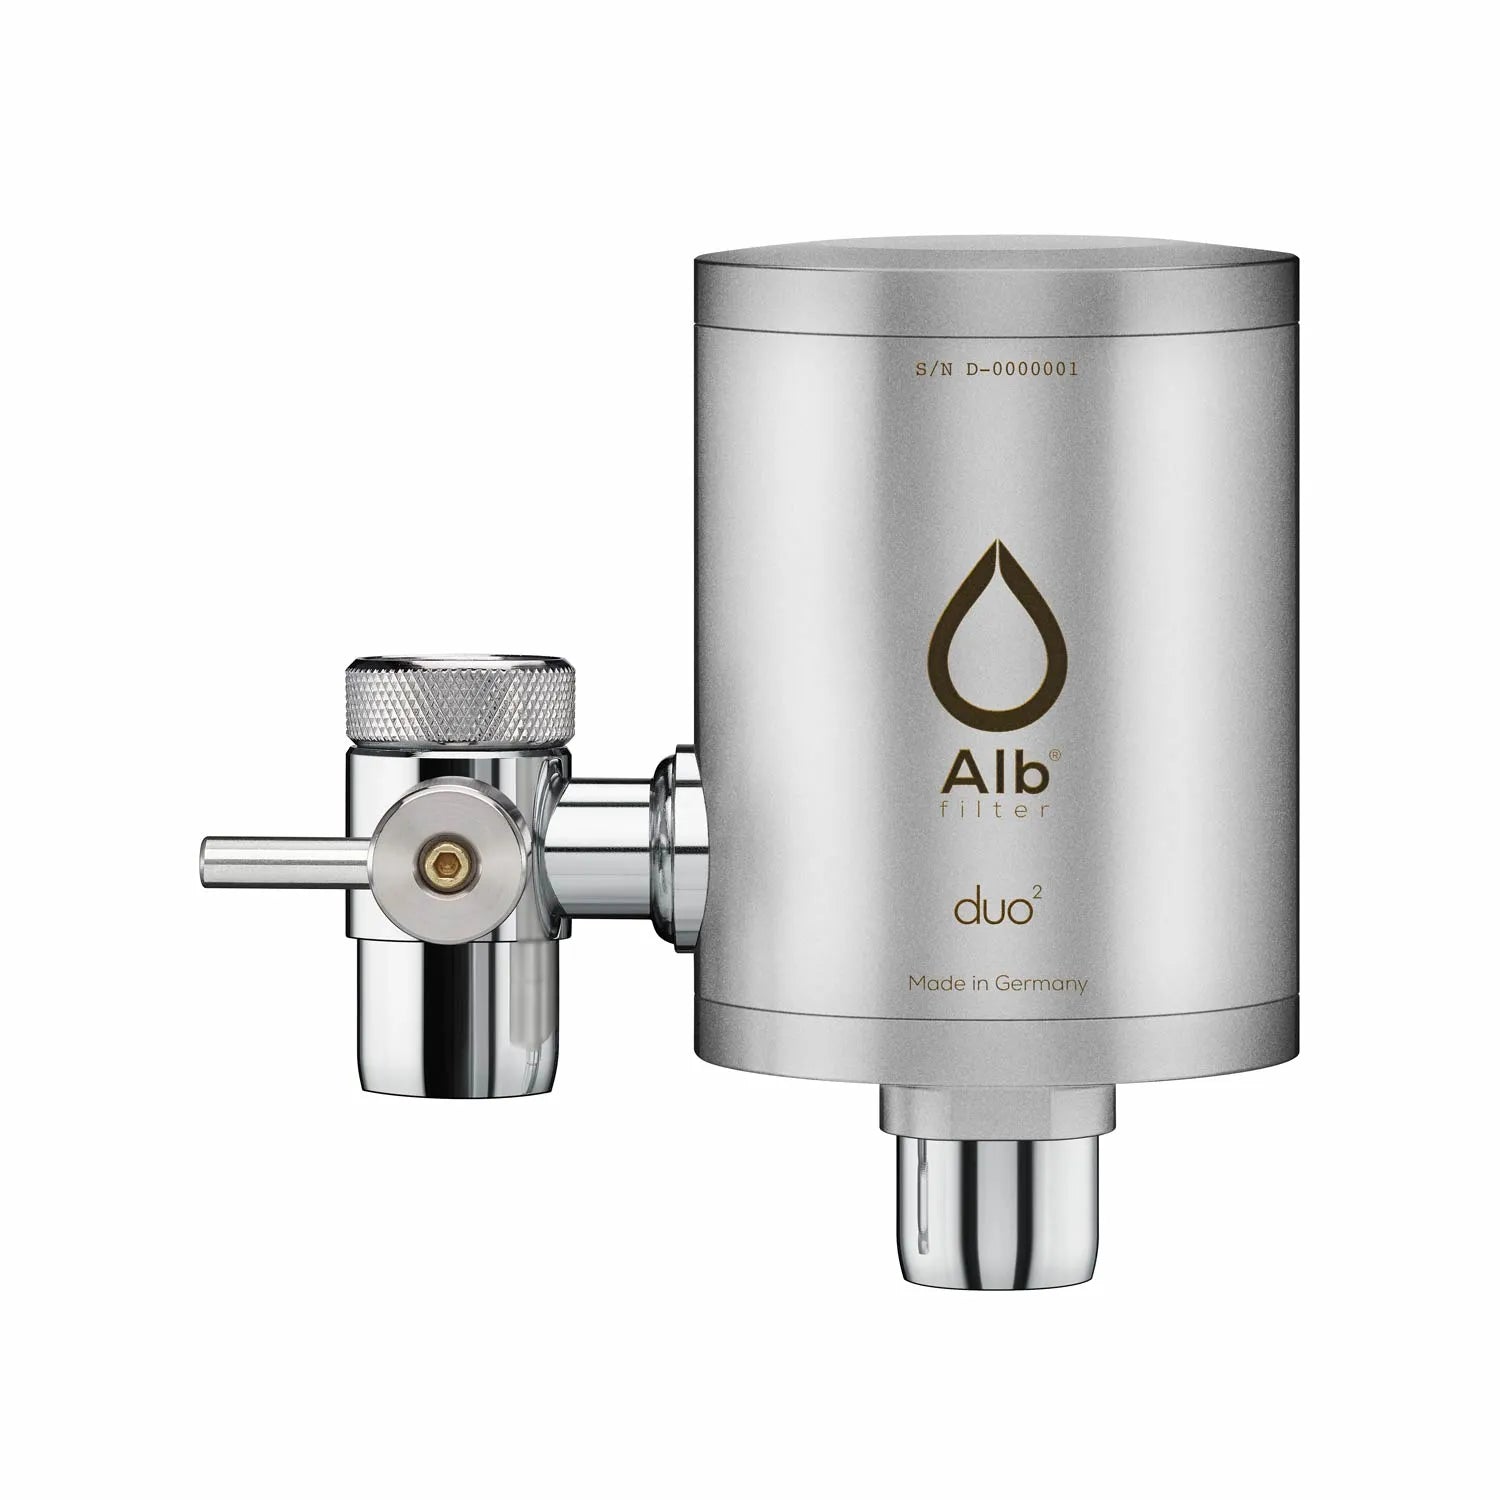 Duo Wasserhahnfilter-Gehäuse in Edelstahl – Alb Filter